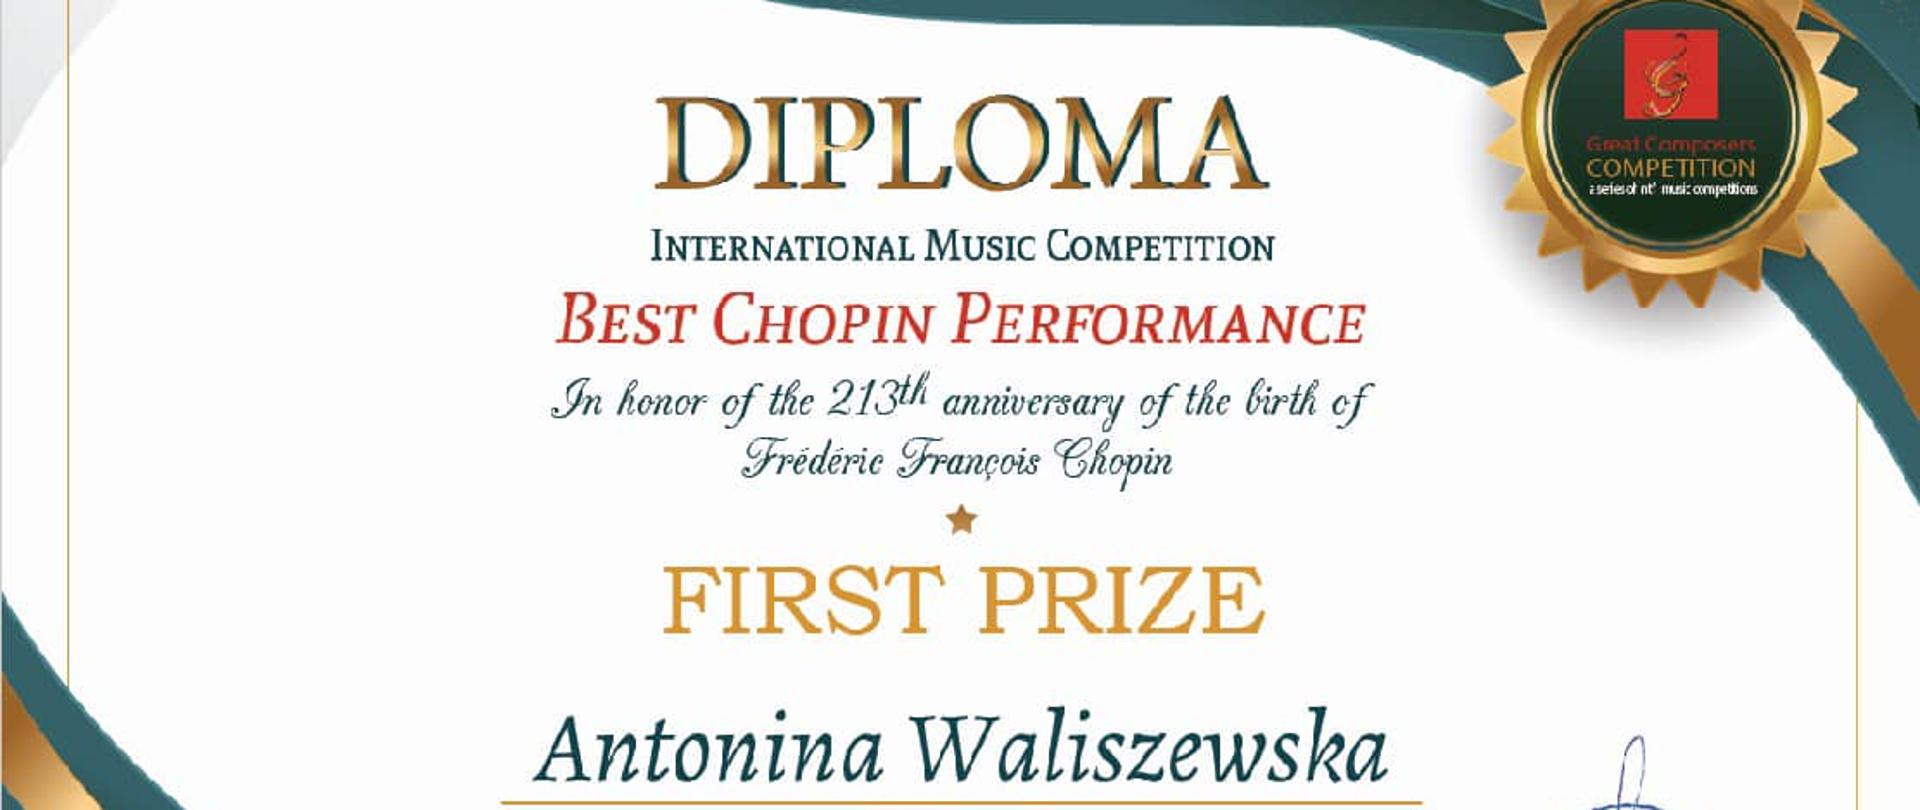 Zdjęcie dyplomu konkursu Best Chopin Performance International Piano Competition, napisy na białym tle, w dolnym lewym rogu zielone i złote fale. Po prawej pieczatka Magnum Opus Enterprises. Data March 01.2023. Antonina Waliszewska Poland First Prize.